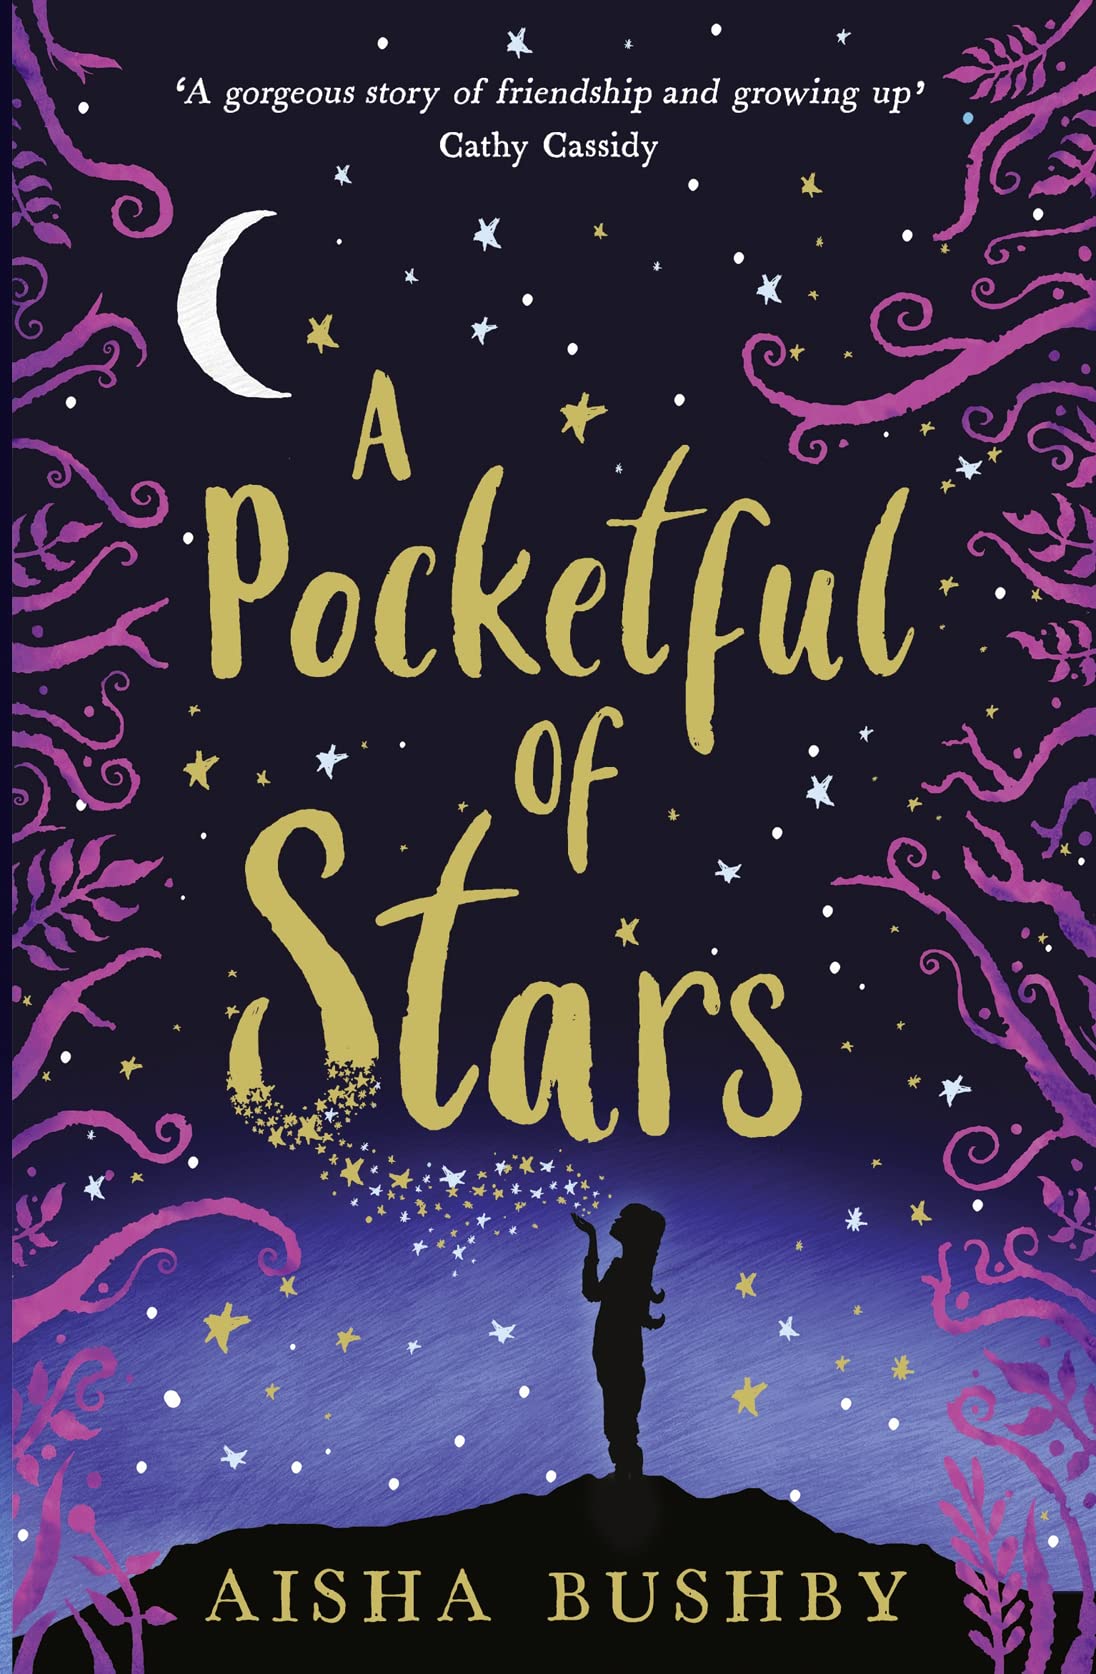 A Pocketful of Stars - Aisha Bushby